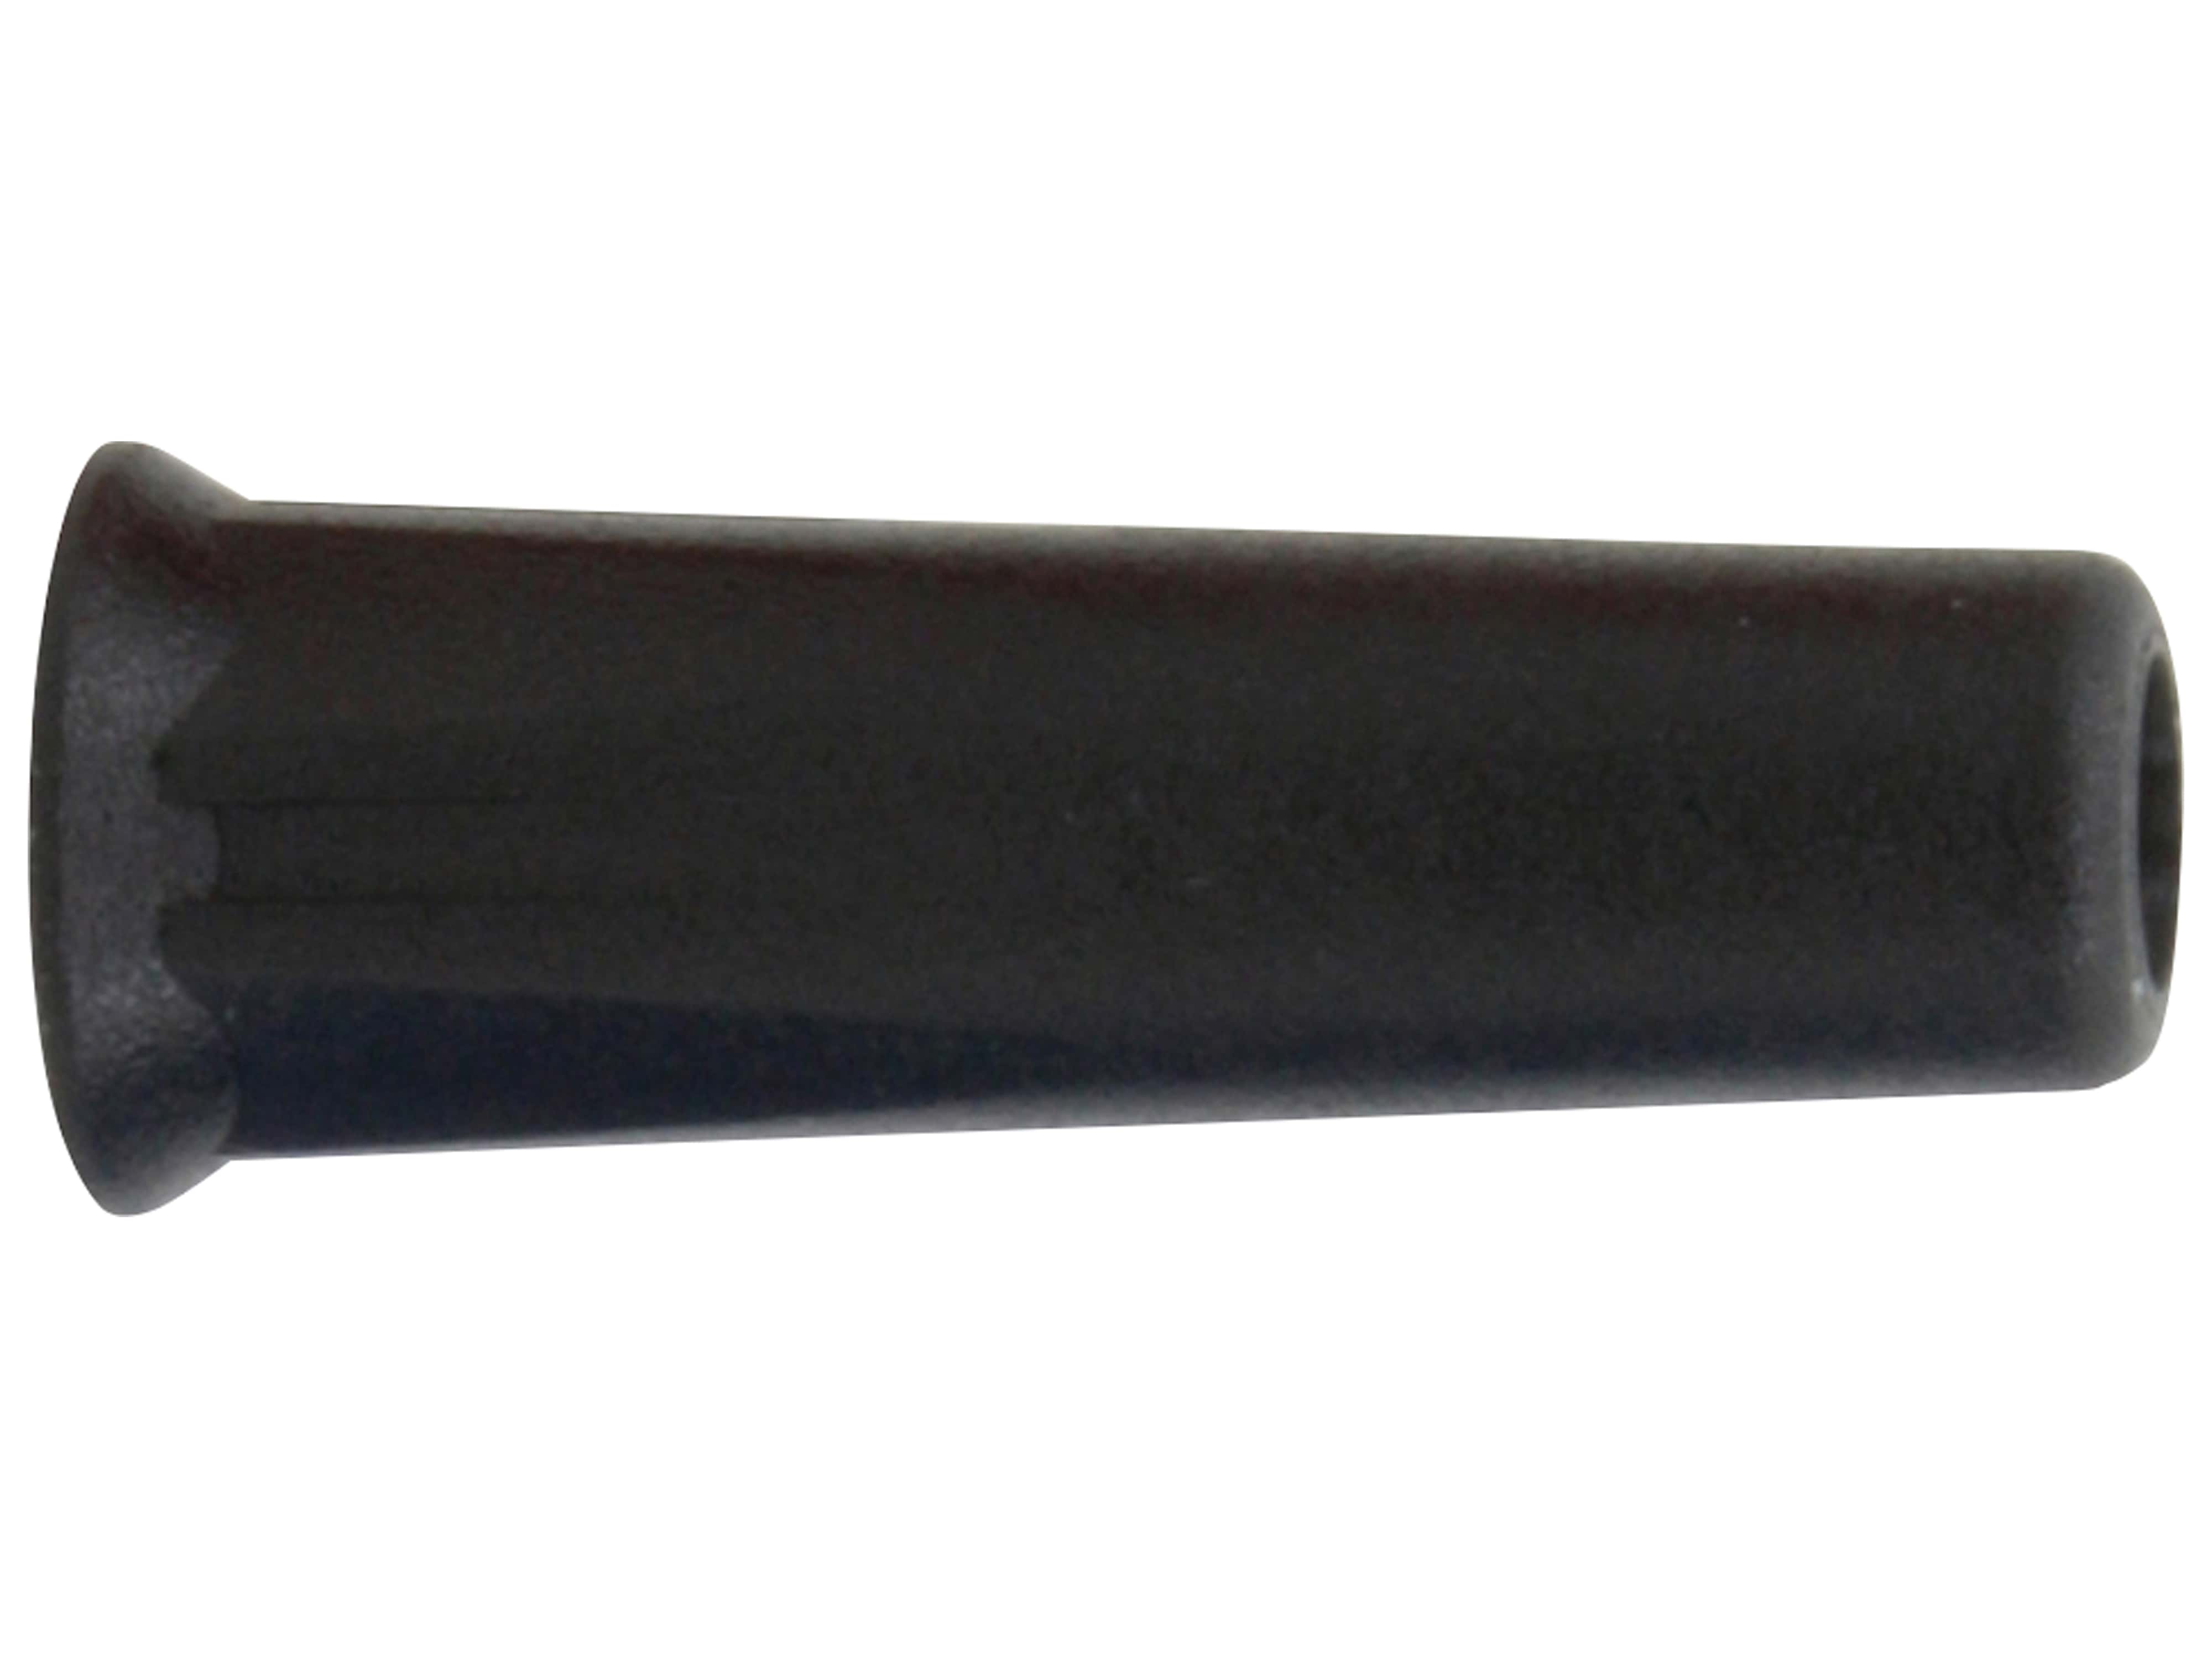 DONAU ELEKTRONIK Bananenkupplung, 4mm, schwarz, 3011